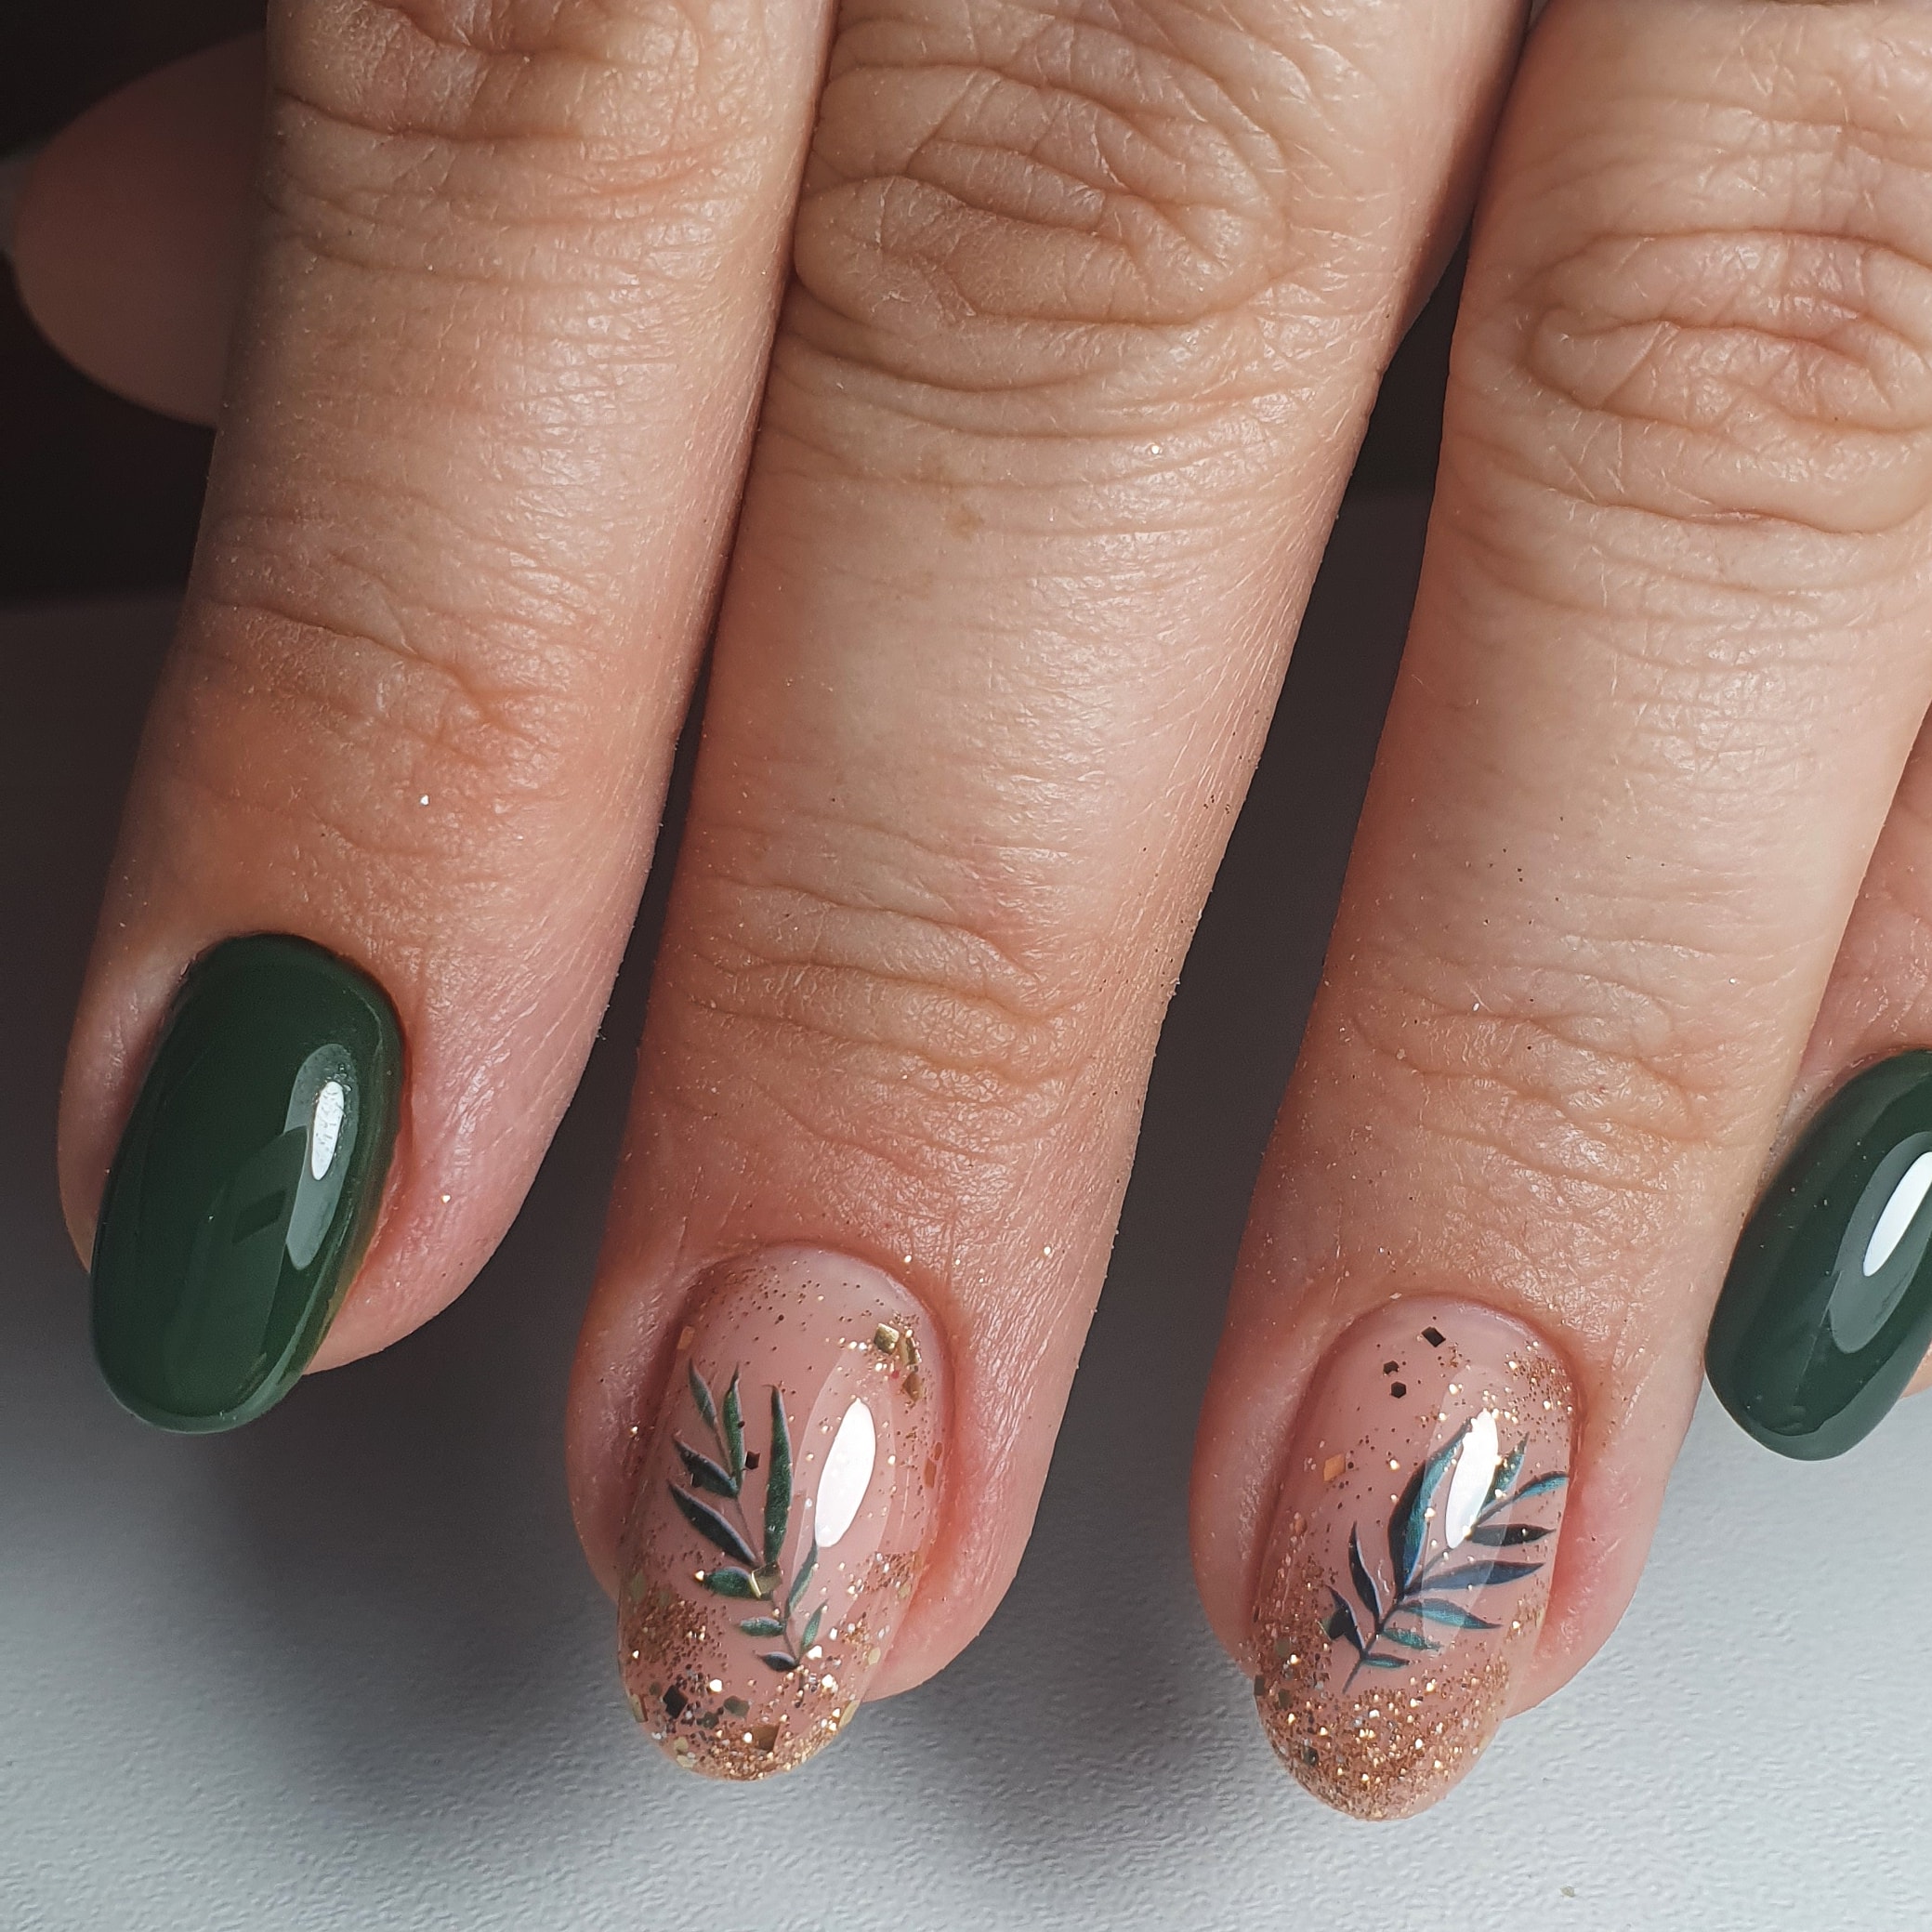 Маникюр с растительными слайдерами и золотыми блестками в темно-зеленом цвете на короткие ногти.